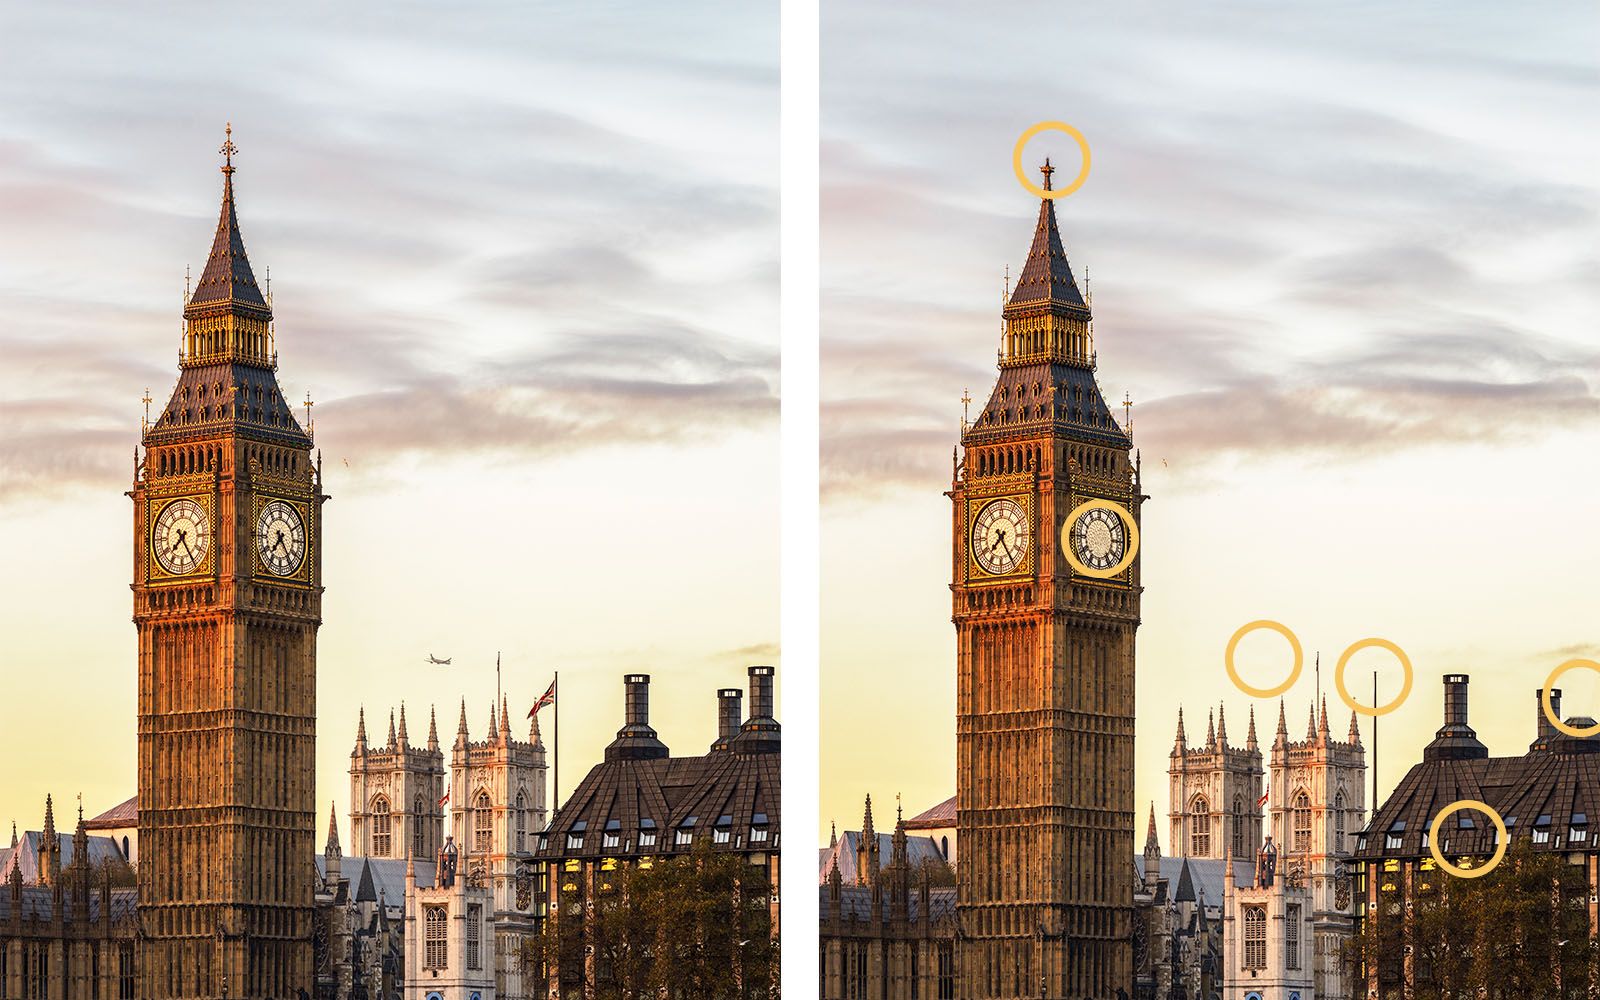 લંડનમાં બિગ બેન ક્લોક ટાવર. તફાવત દર્શાવતી સમાન છબીઓમાંથી બે.